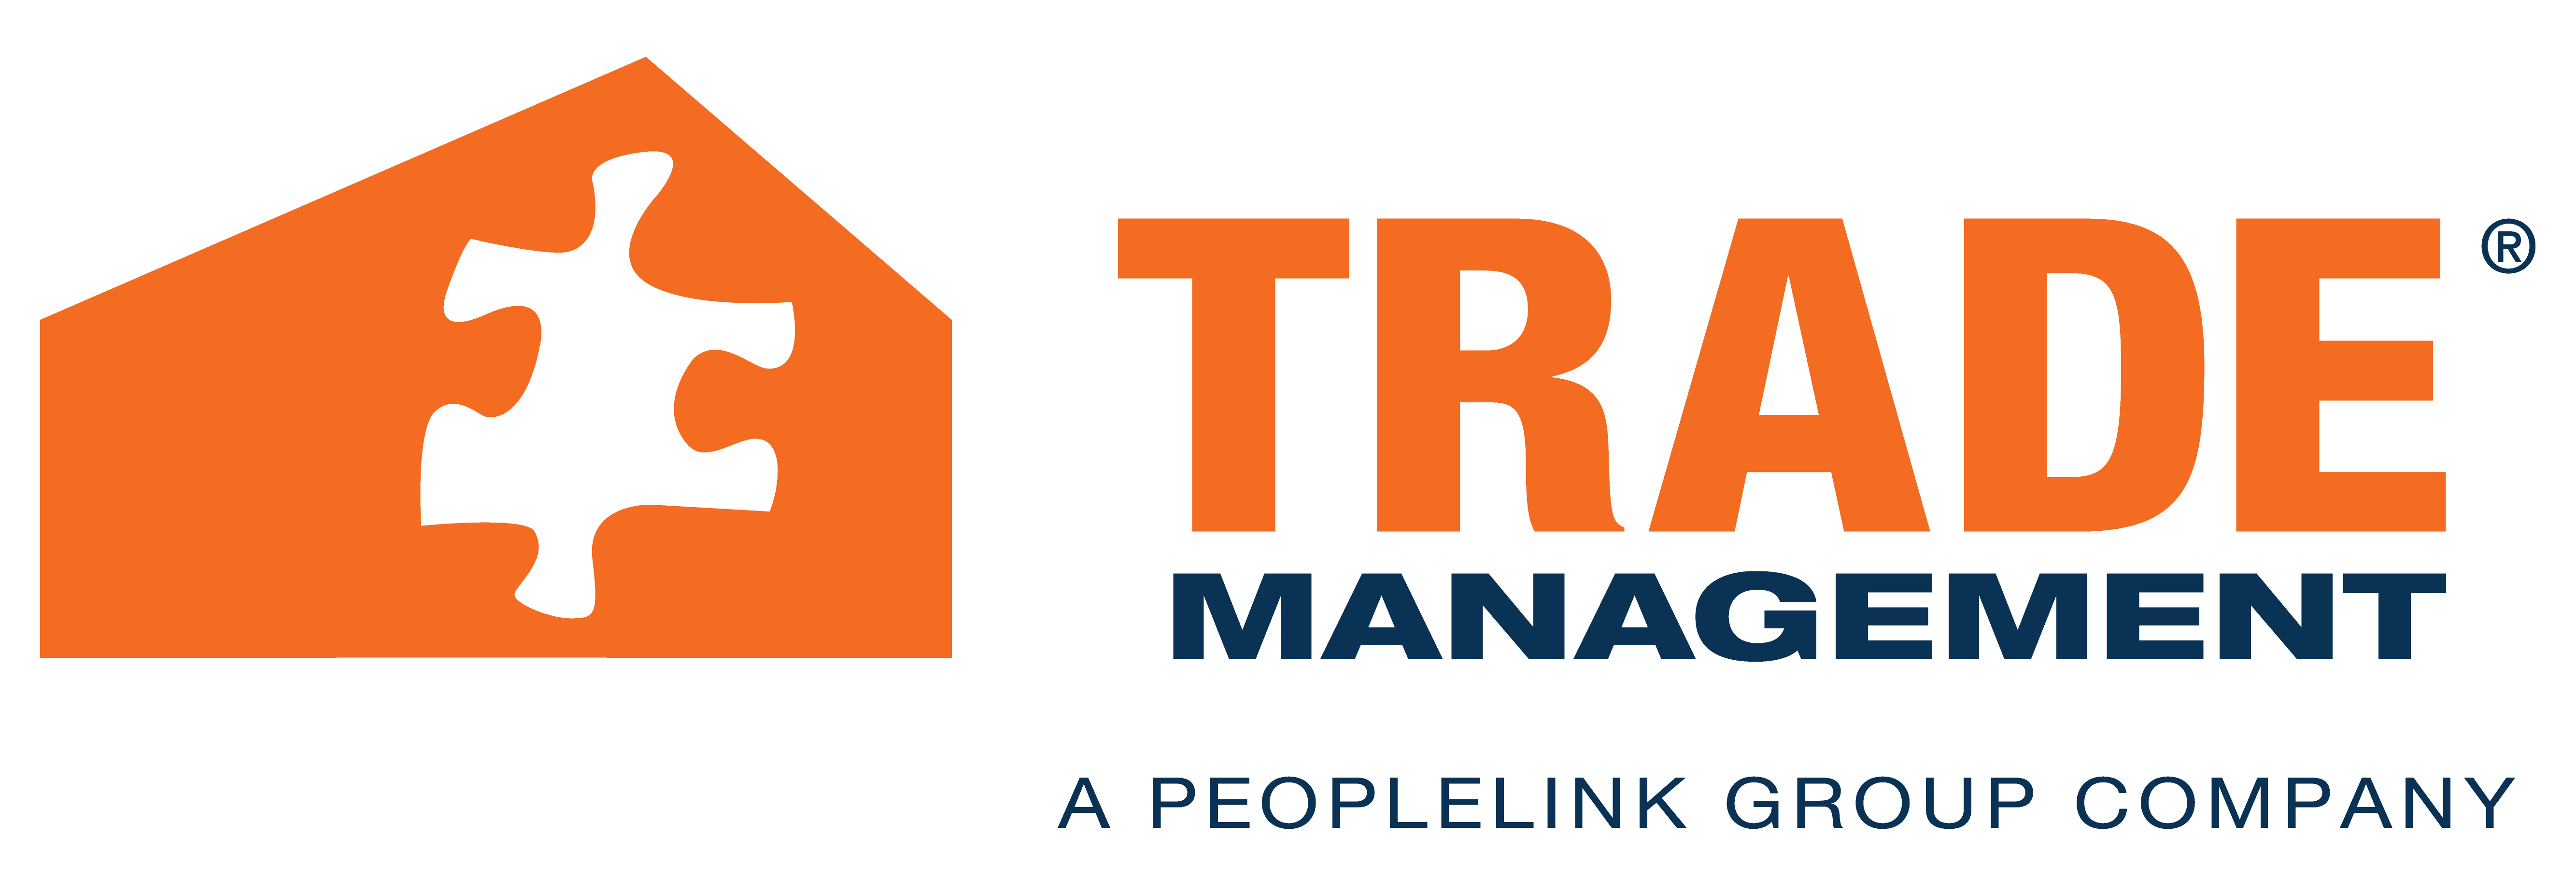 A Peoplelink Company